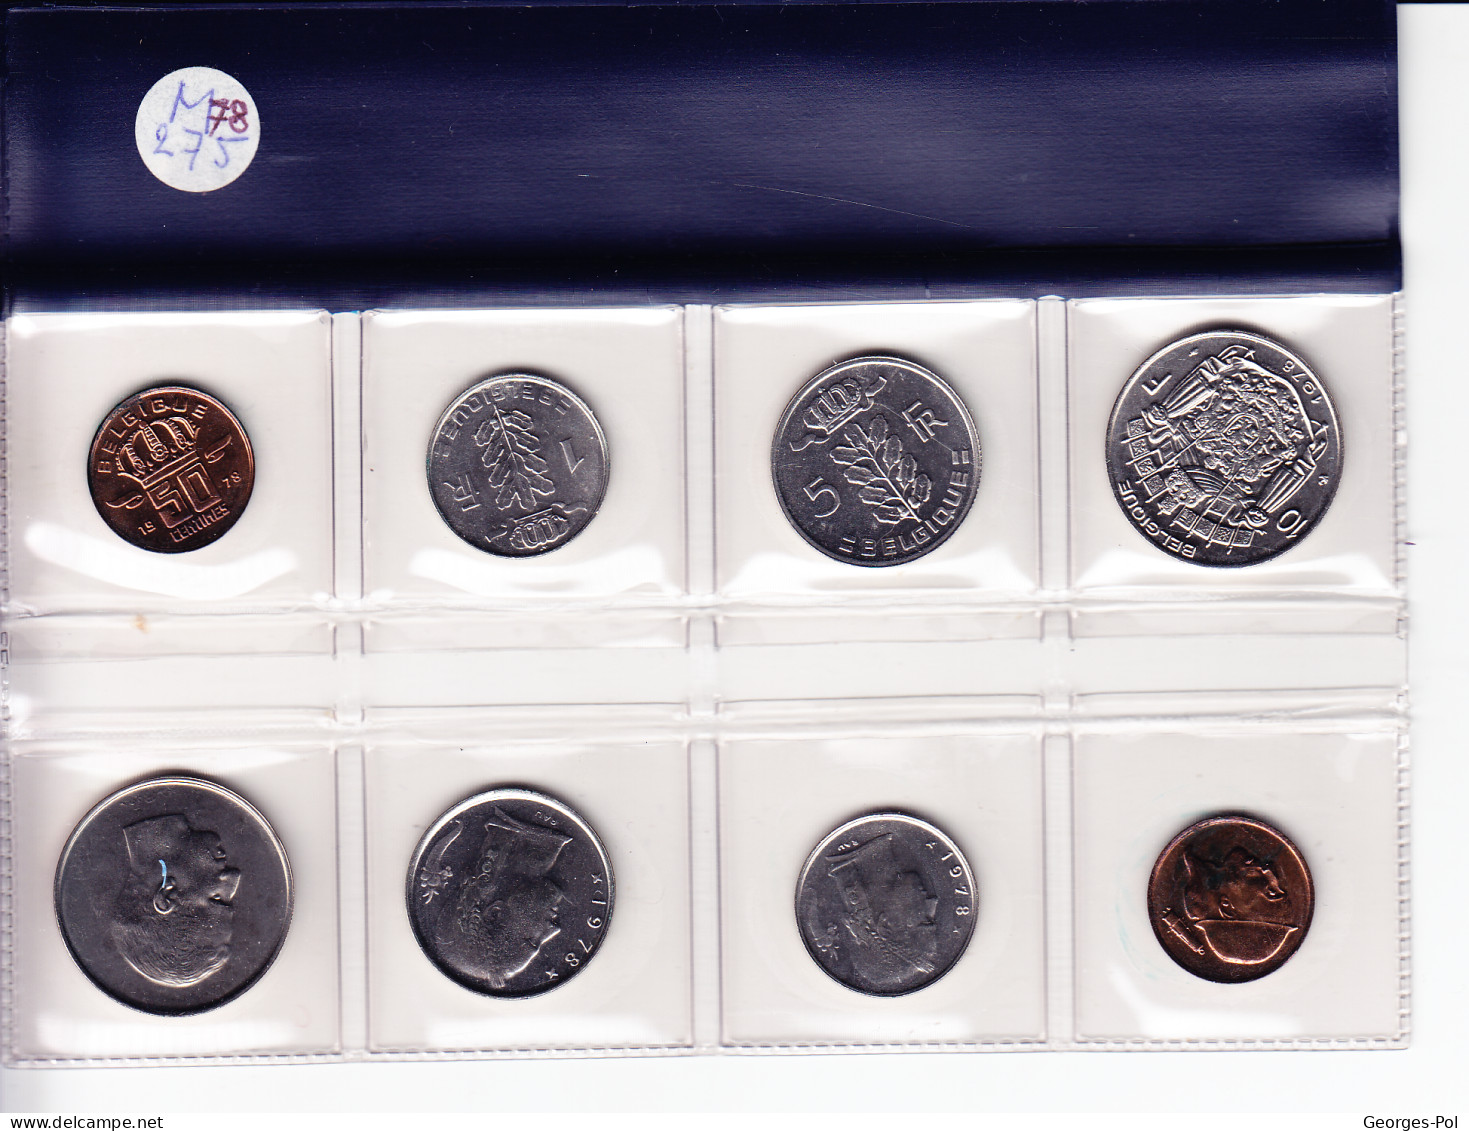 Monnaie Royale De Belgique 1978 Koninklijke Munt Van België.  Carte De 8 Pièces N'ayant Pas Circulé (4 FR + 4 NL) - FDC, BU, Proofs & Presentation Cases